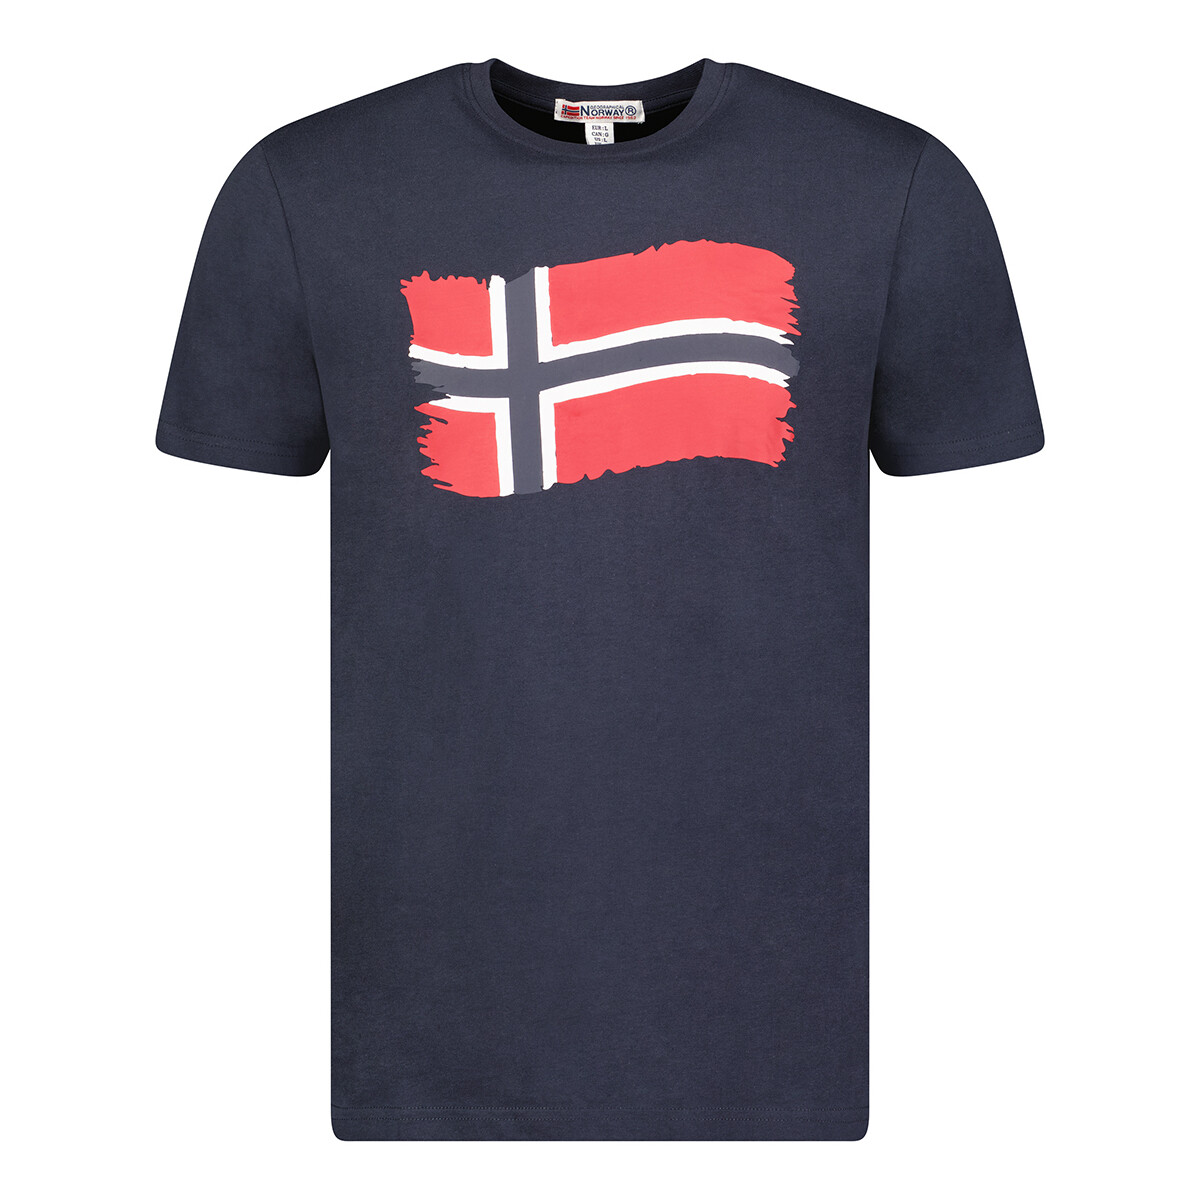 Textiel Heren T-shirts korte mouwen Geographical Norway SX1078HGN-NAVY Blauw